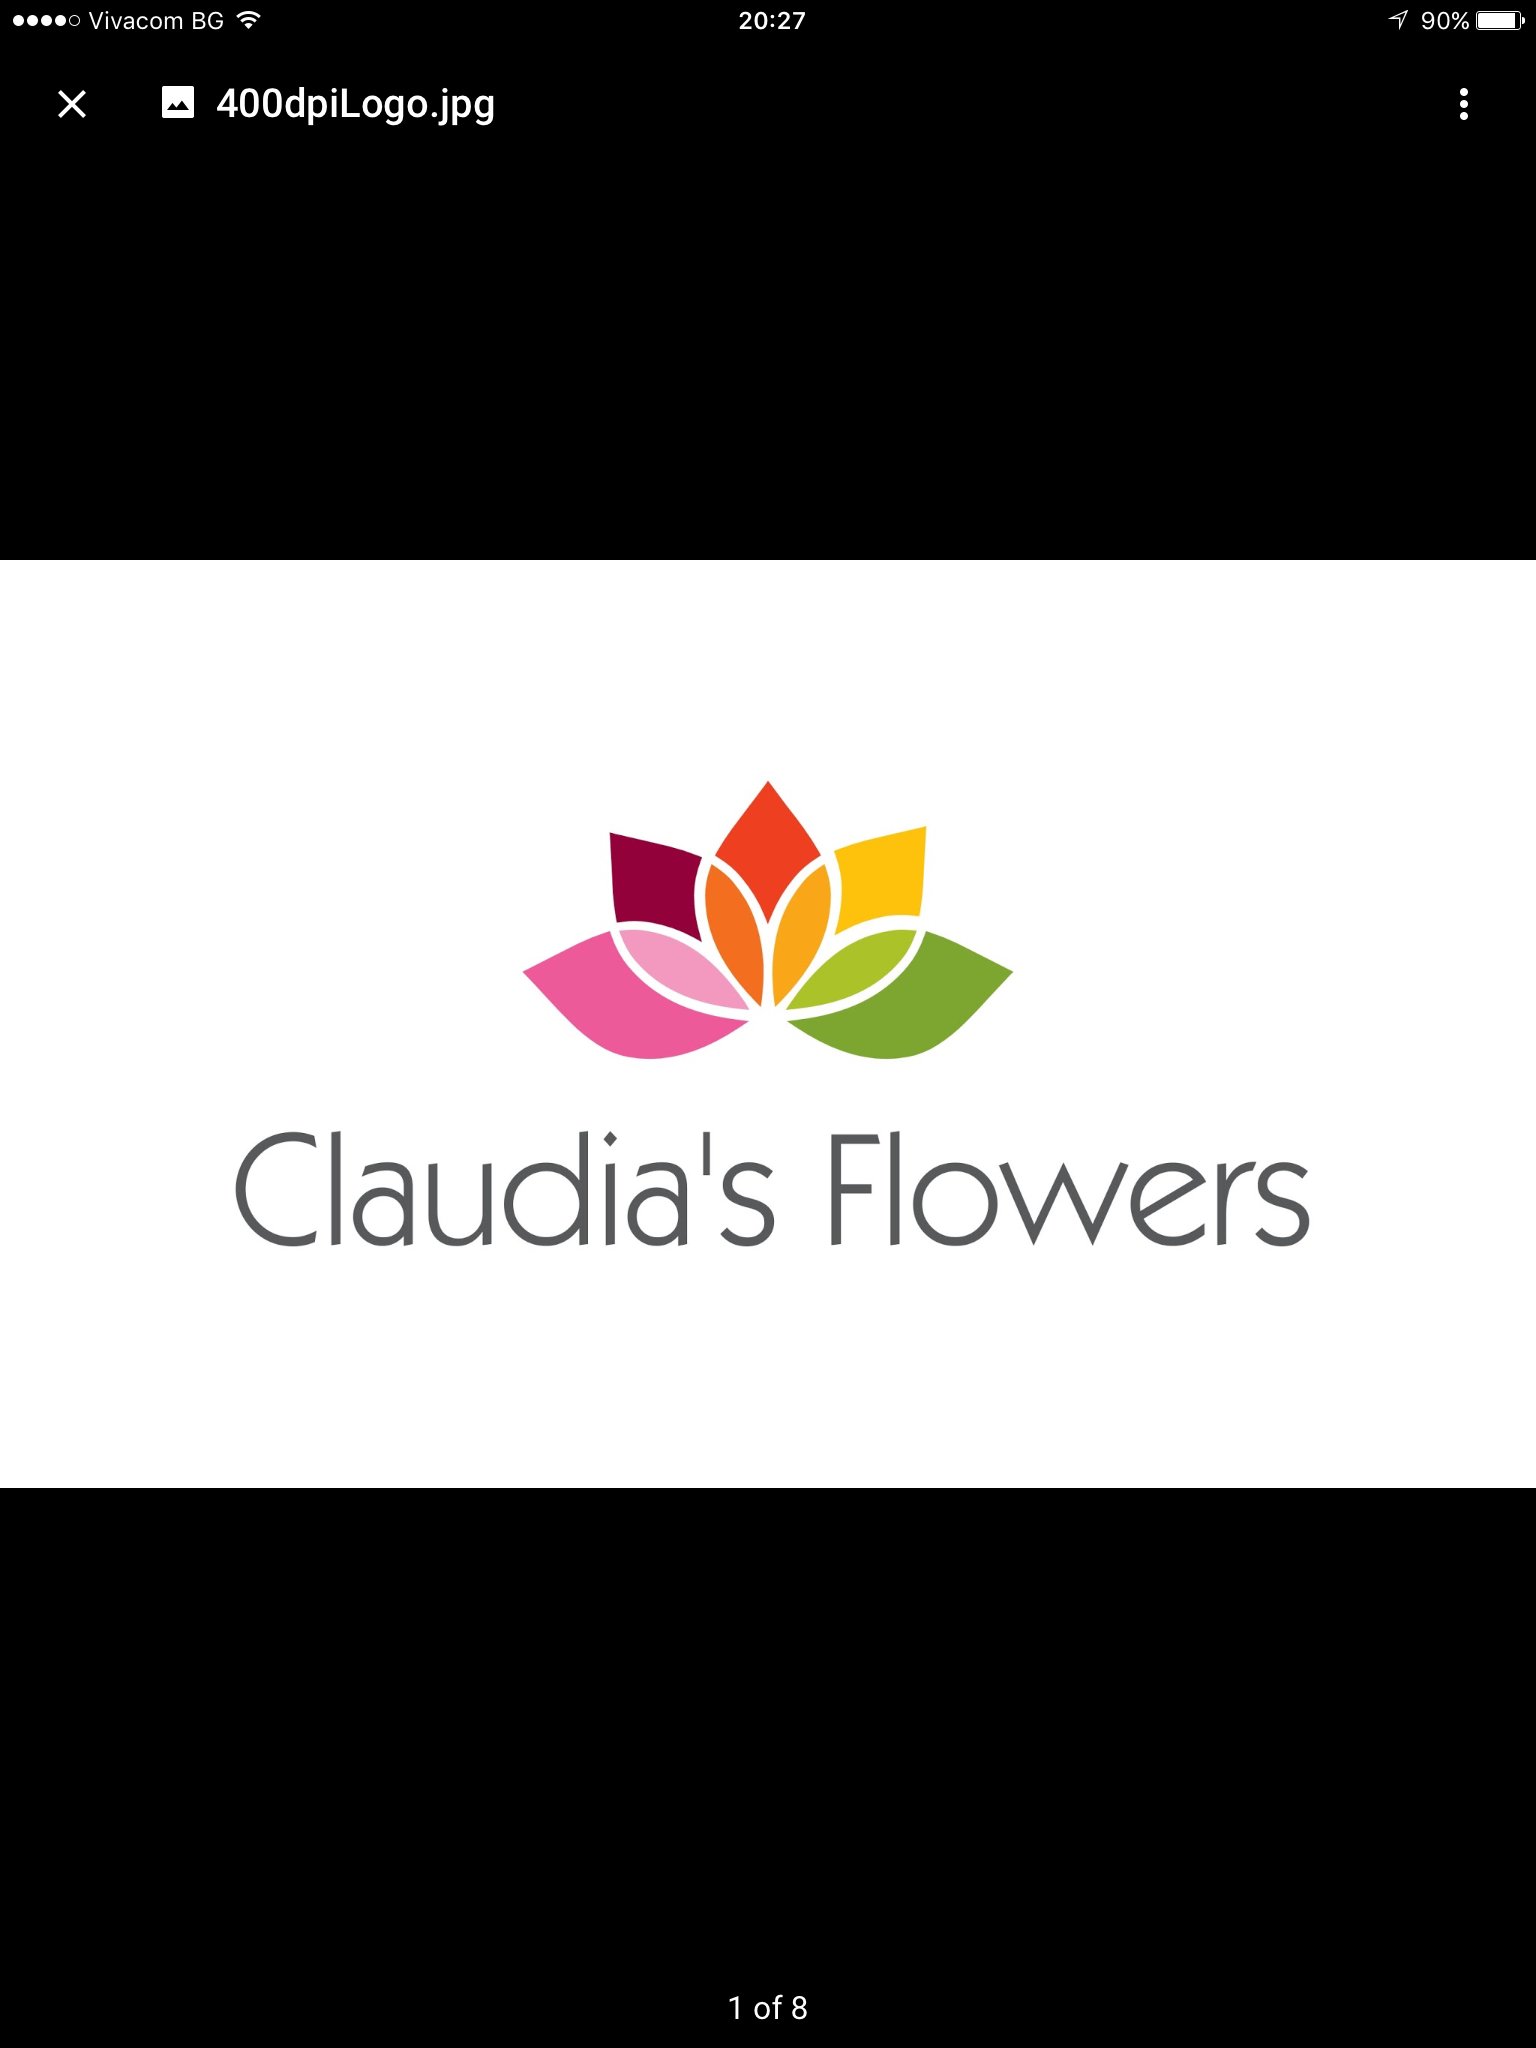 Claudia's Flowers